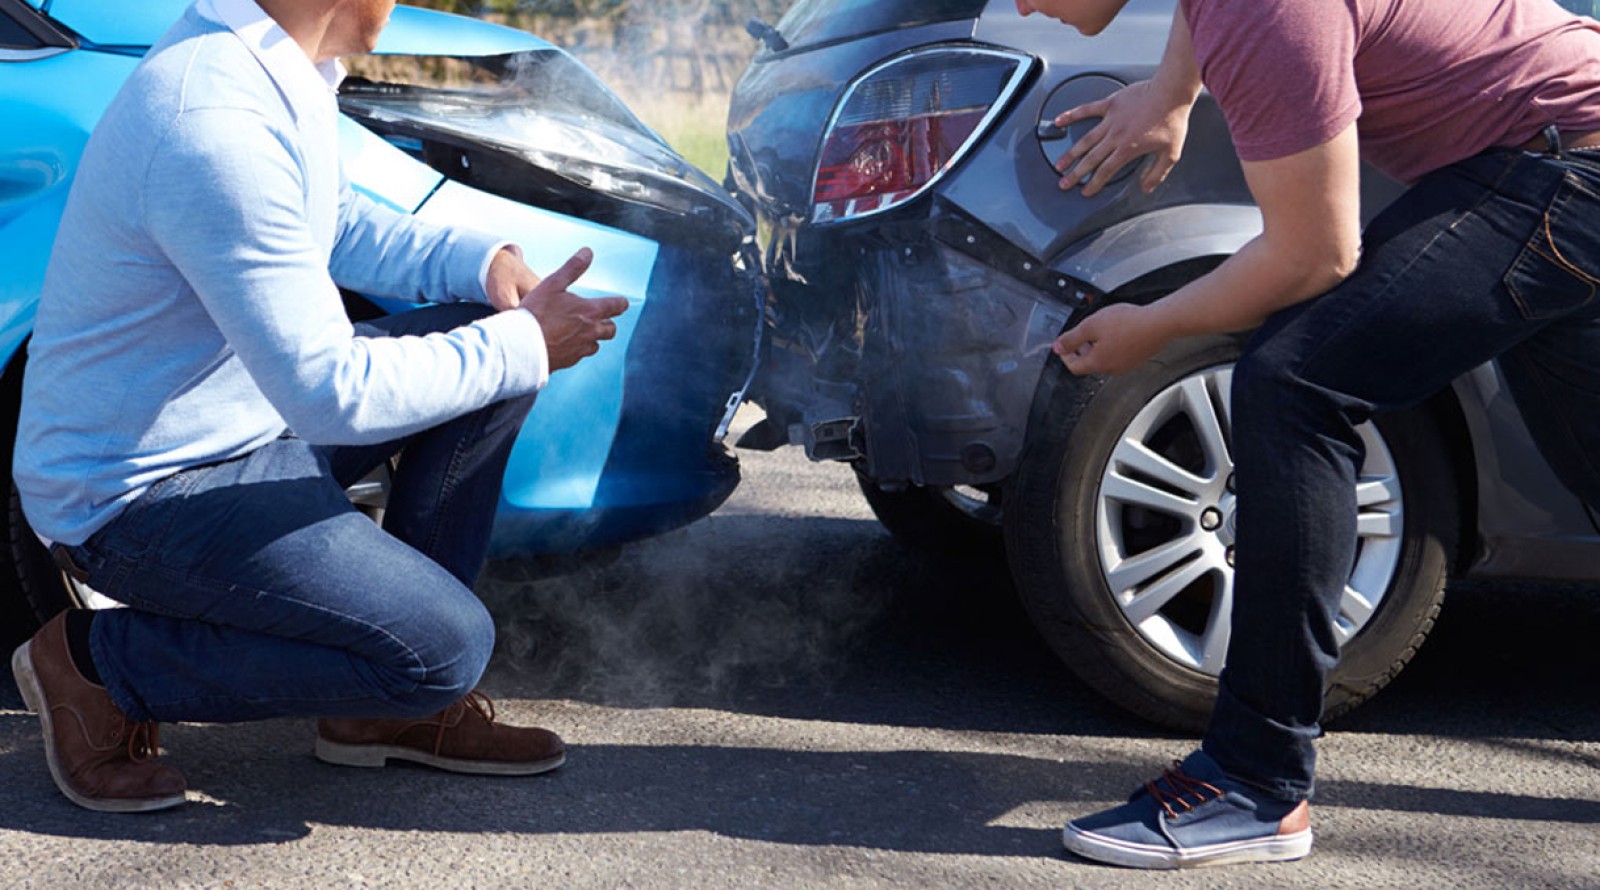 5 thói quen xấu khi điều khiển ô tô dễ gây tai nạn